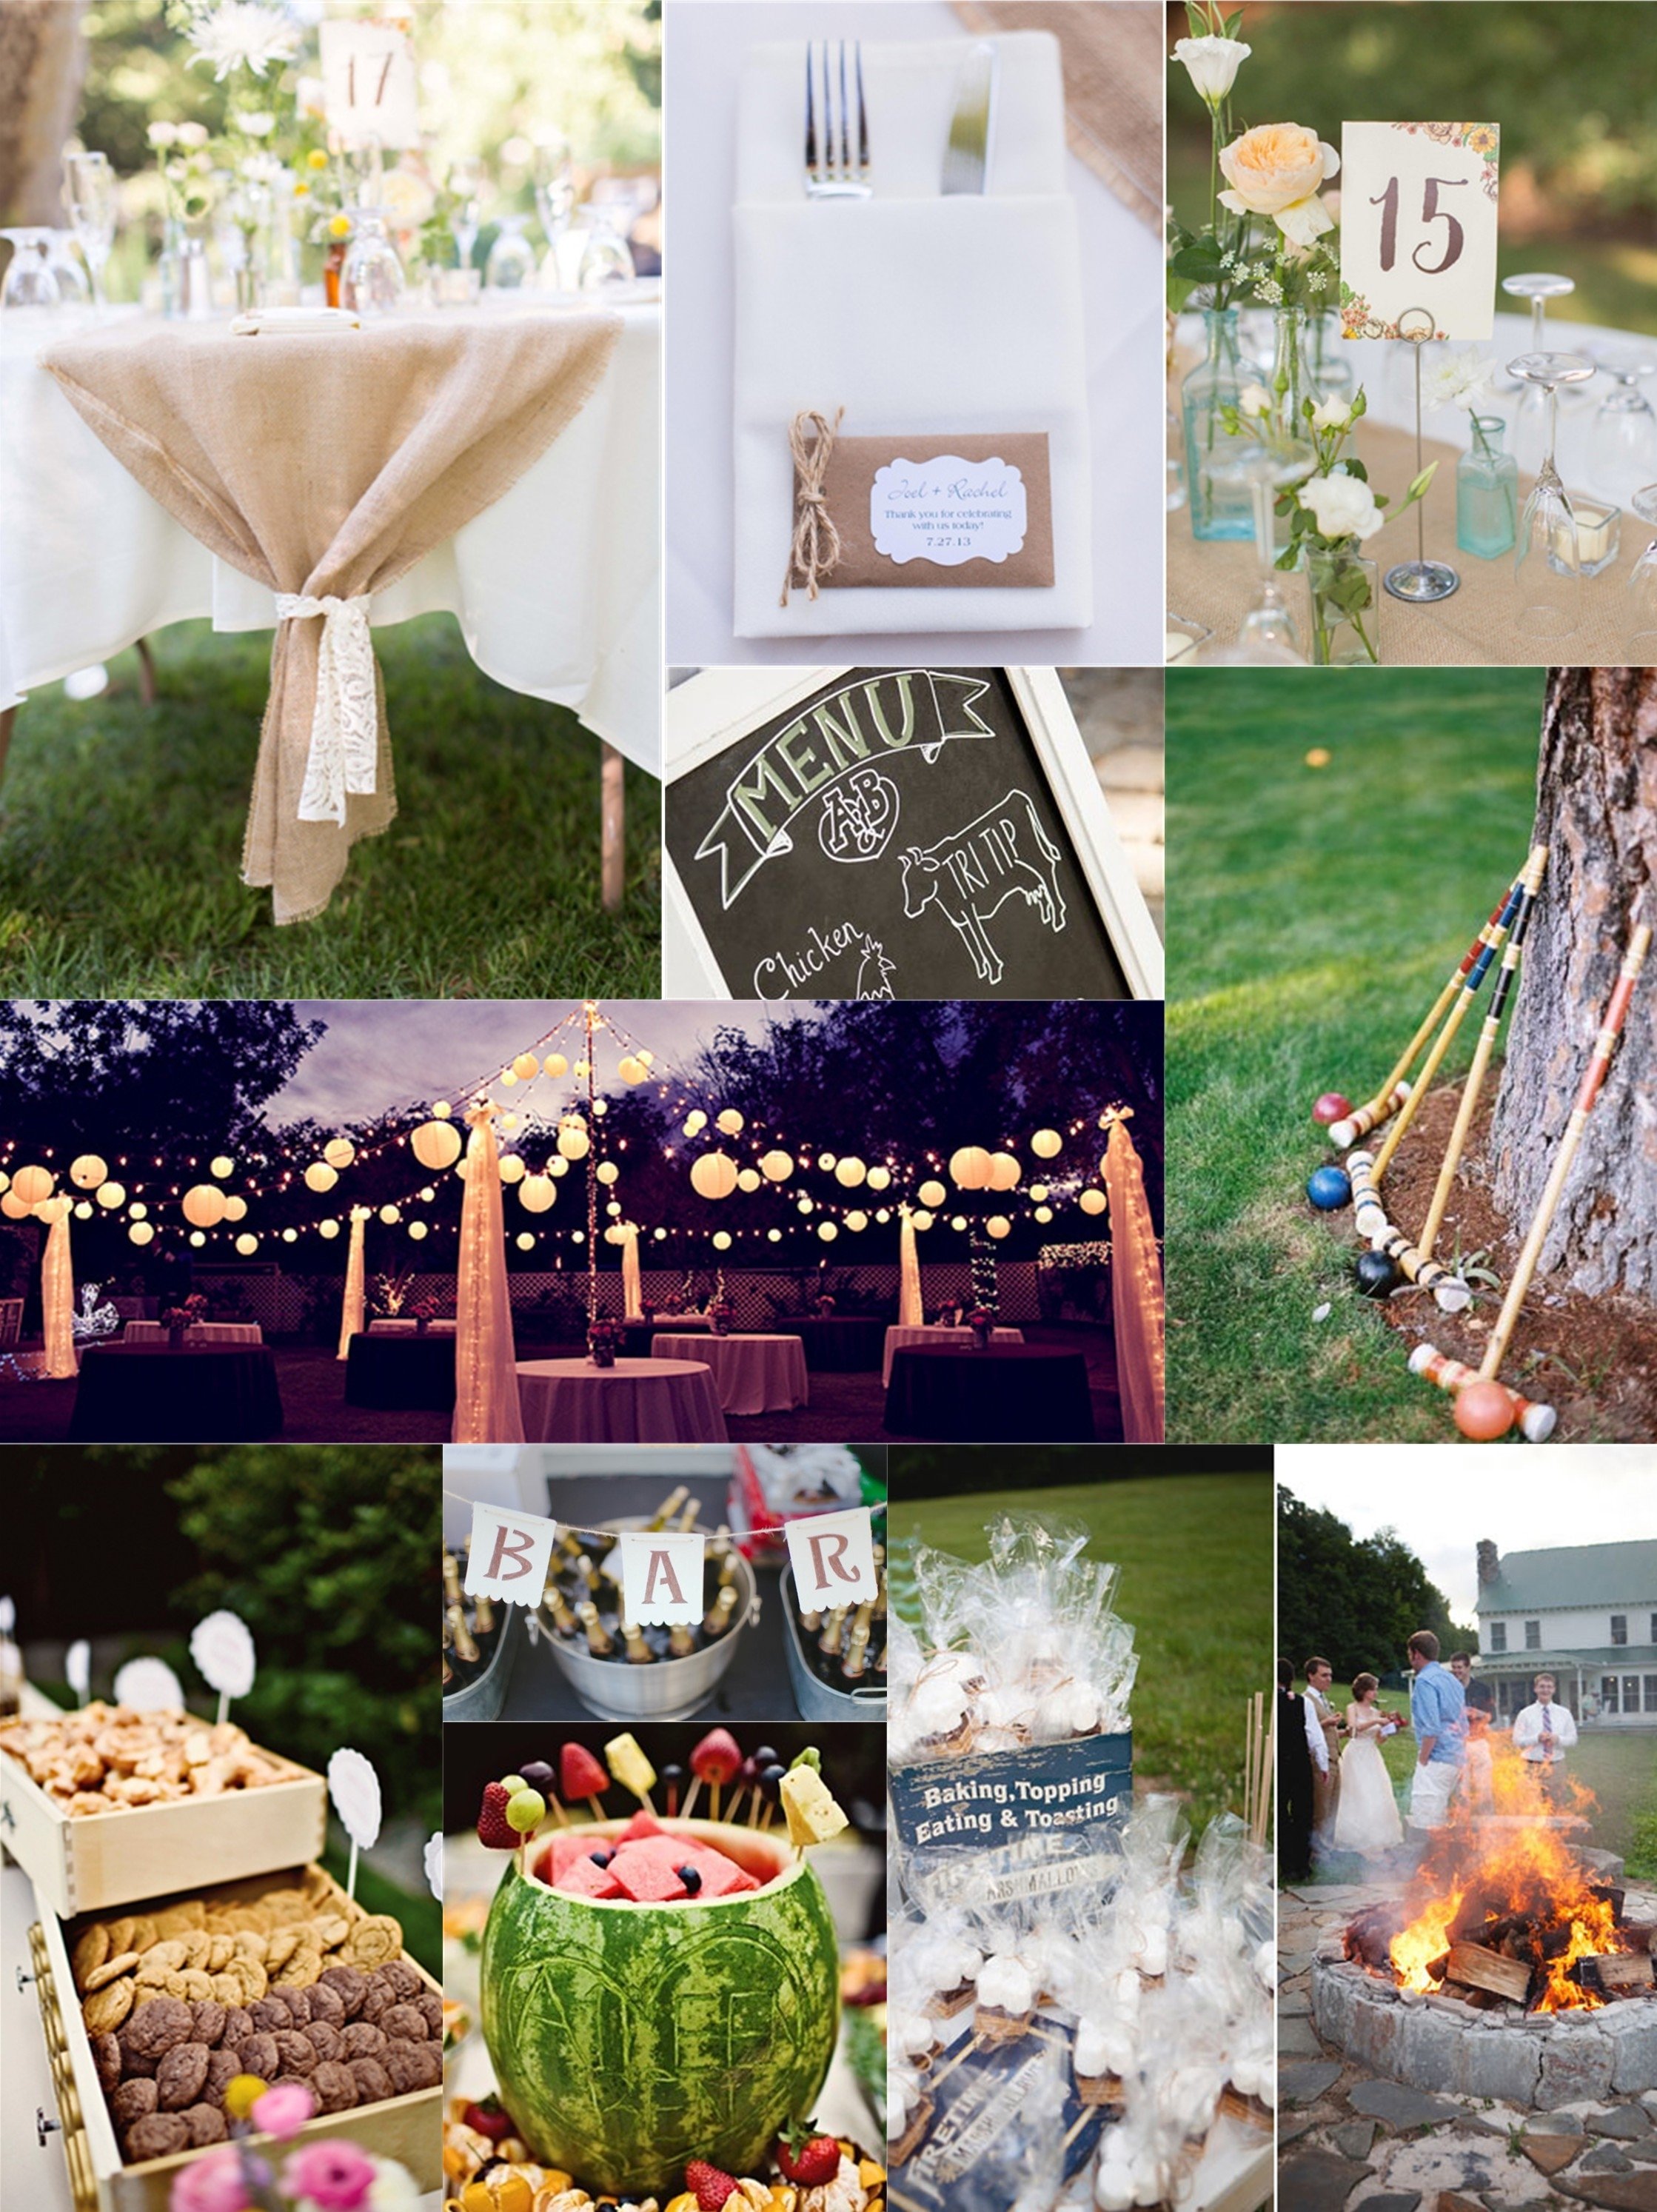 10 Wonderful Backyard Wedding Reception Ideas On A Budget incredible wedding ideas on a budget backyard wedding ideas on a 1 2022